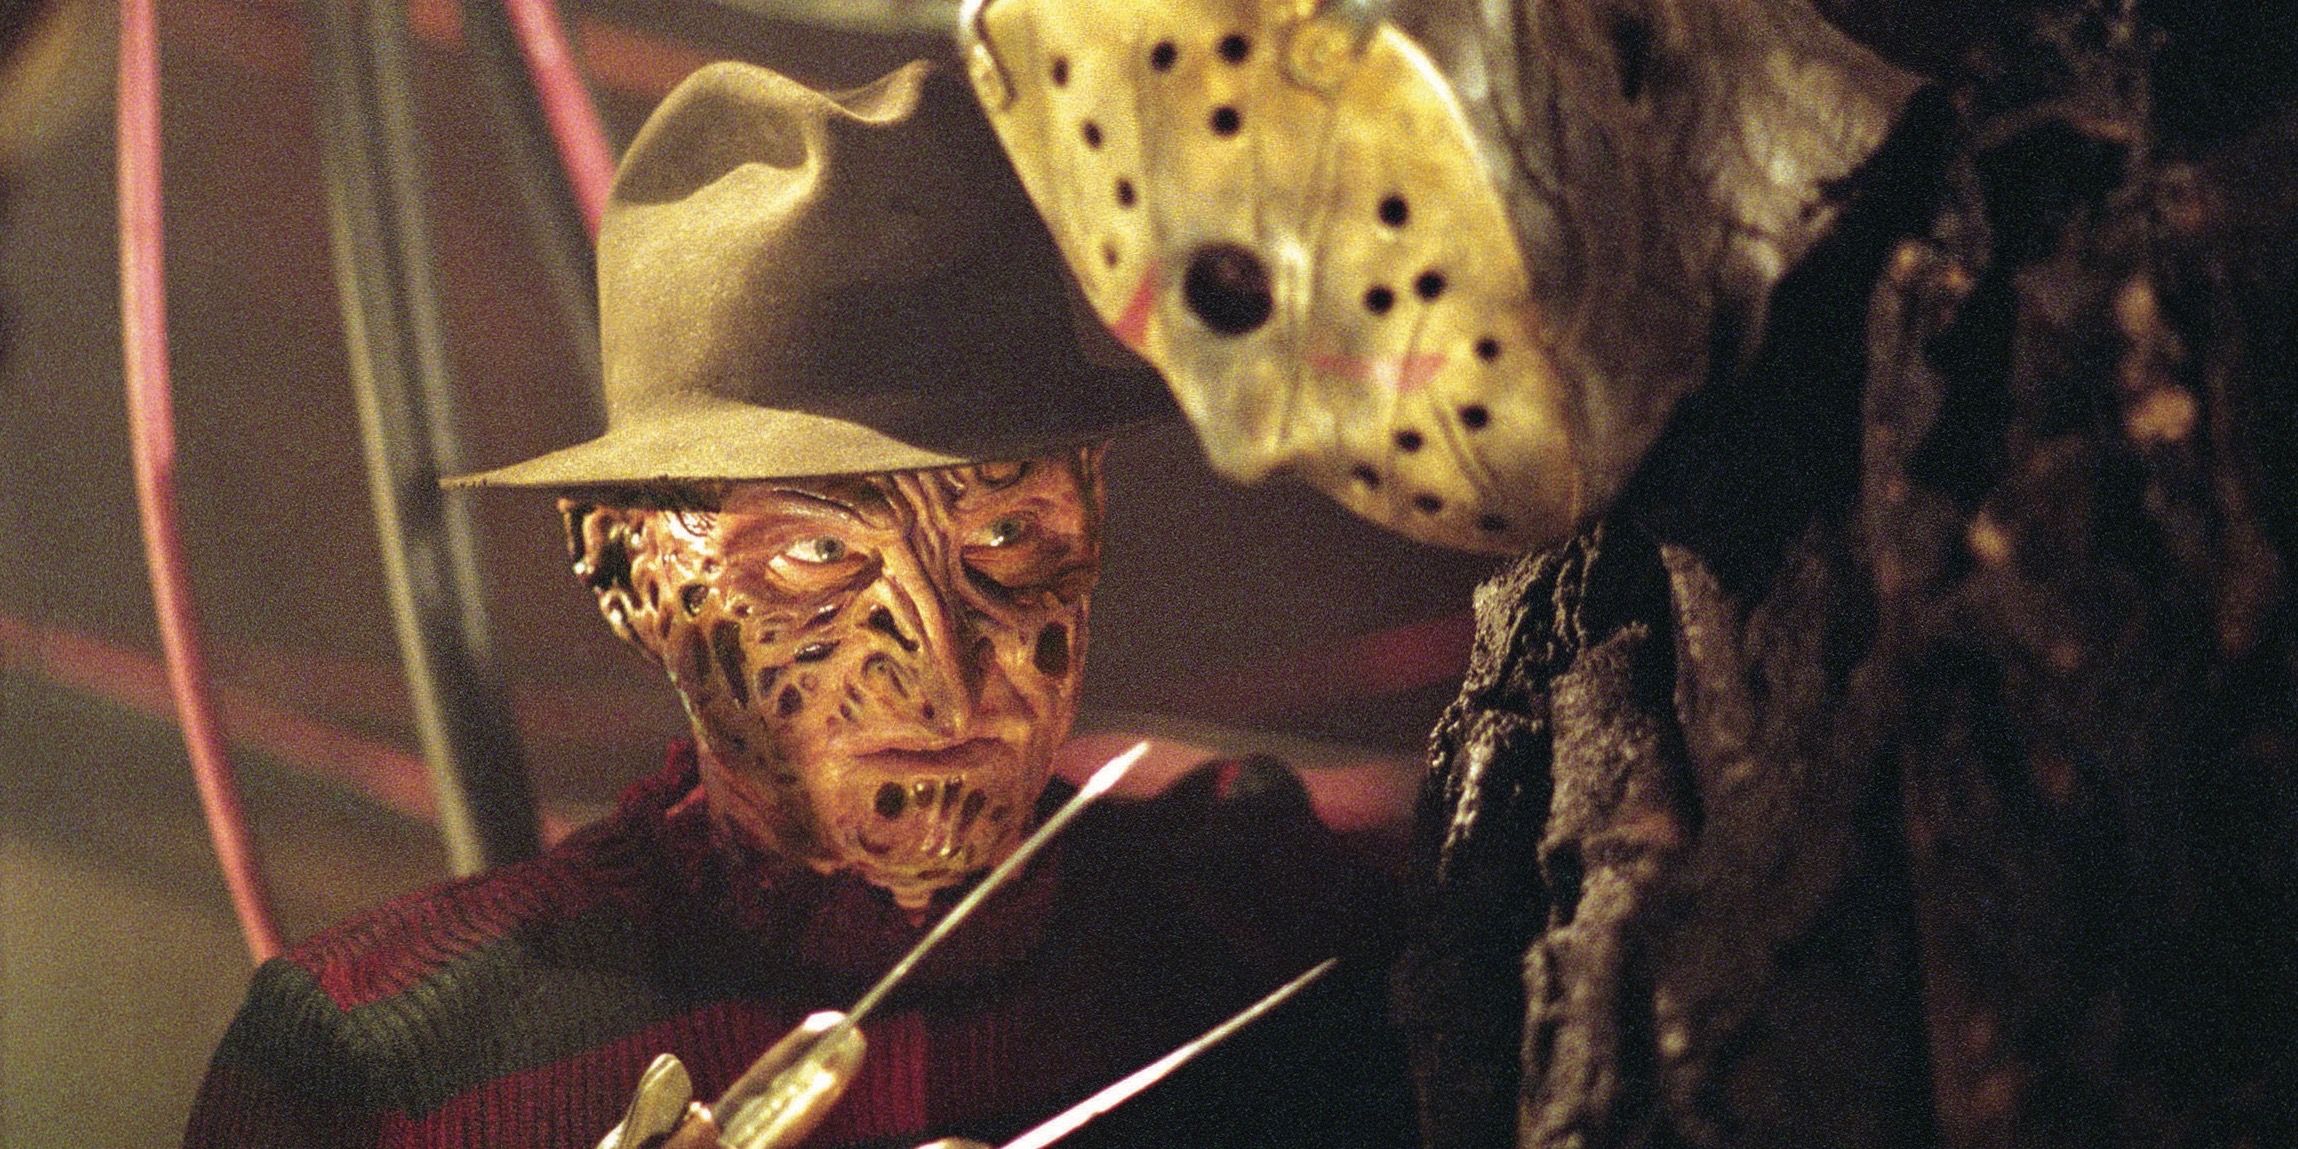 Robert Englund as Freddy Krueger and Ken Kirzinger as Jason Voorhees in Freddy vs Jason